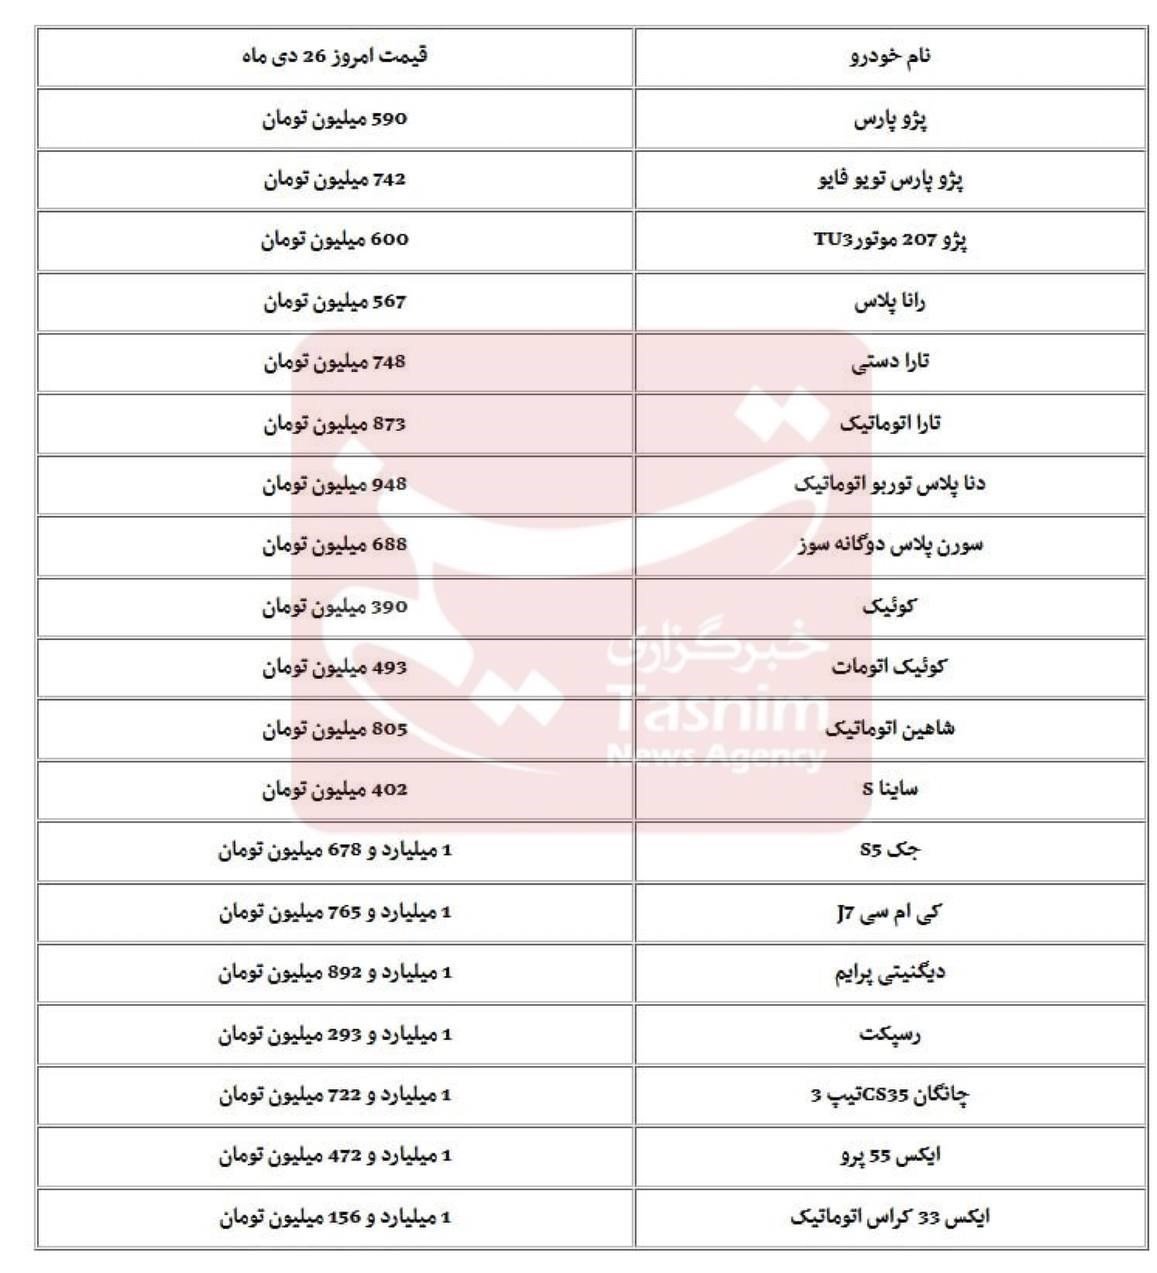 قیمت روز خودروهای داخلی و مونتاژی در بازار تهران / 26 دی 1402